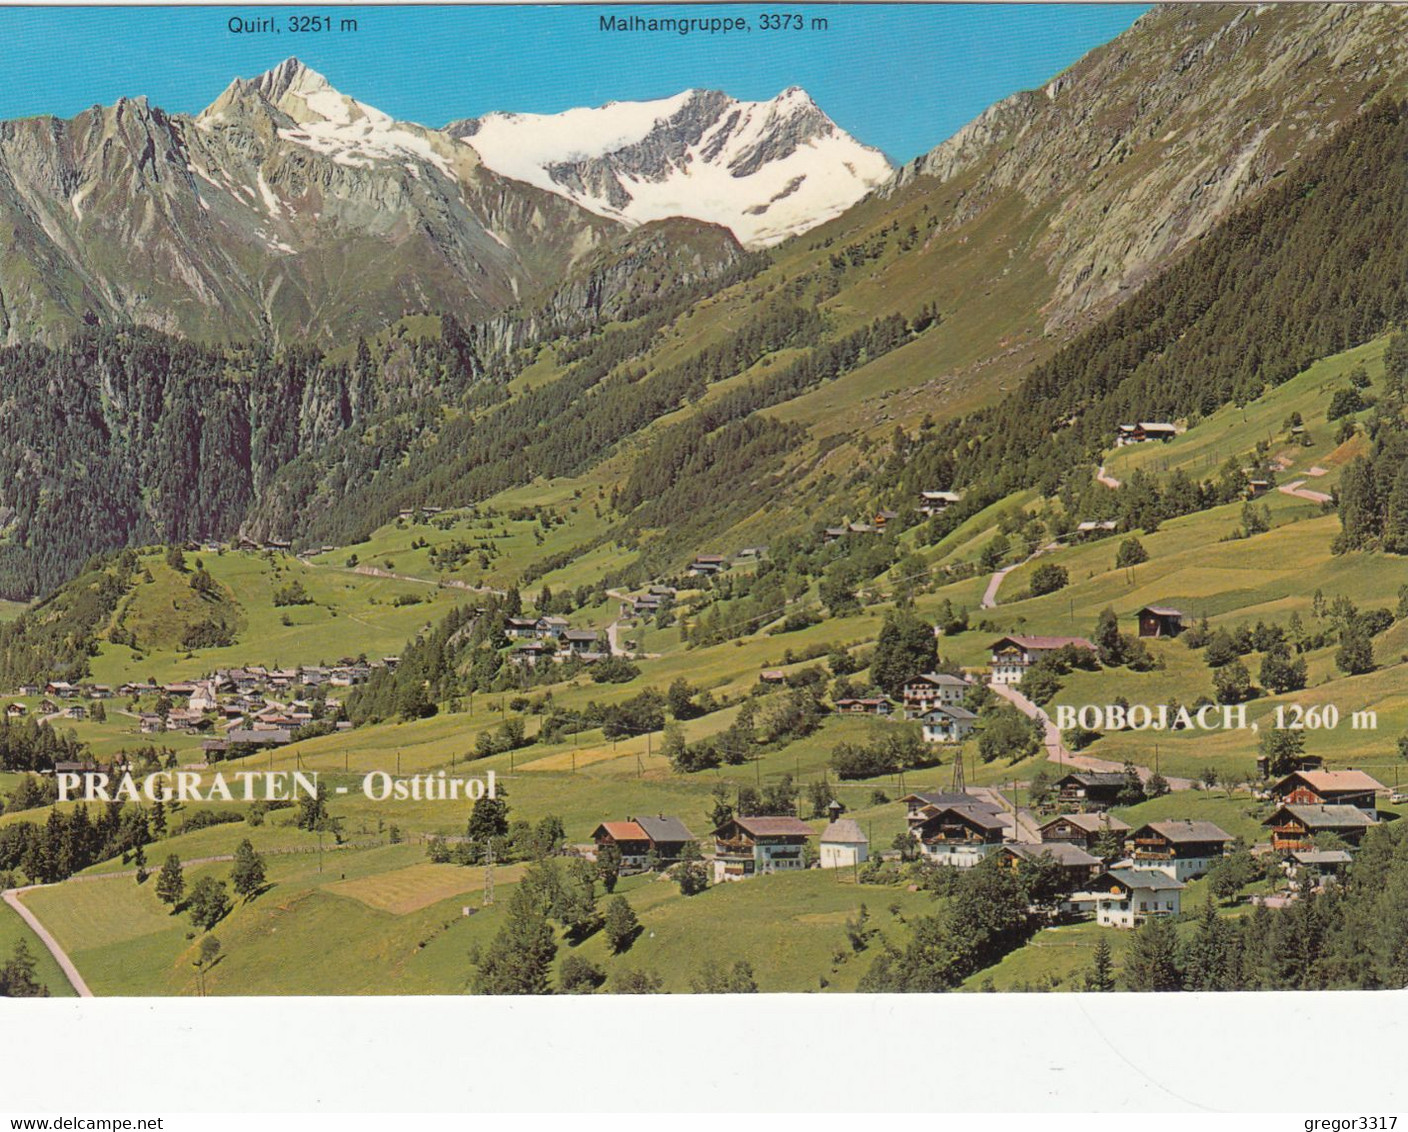 1316) Prägraten - Osttirol - BOBOJACH - Haus Details TOP !! M. Malhamgruppe Quirl - - Prägraten